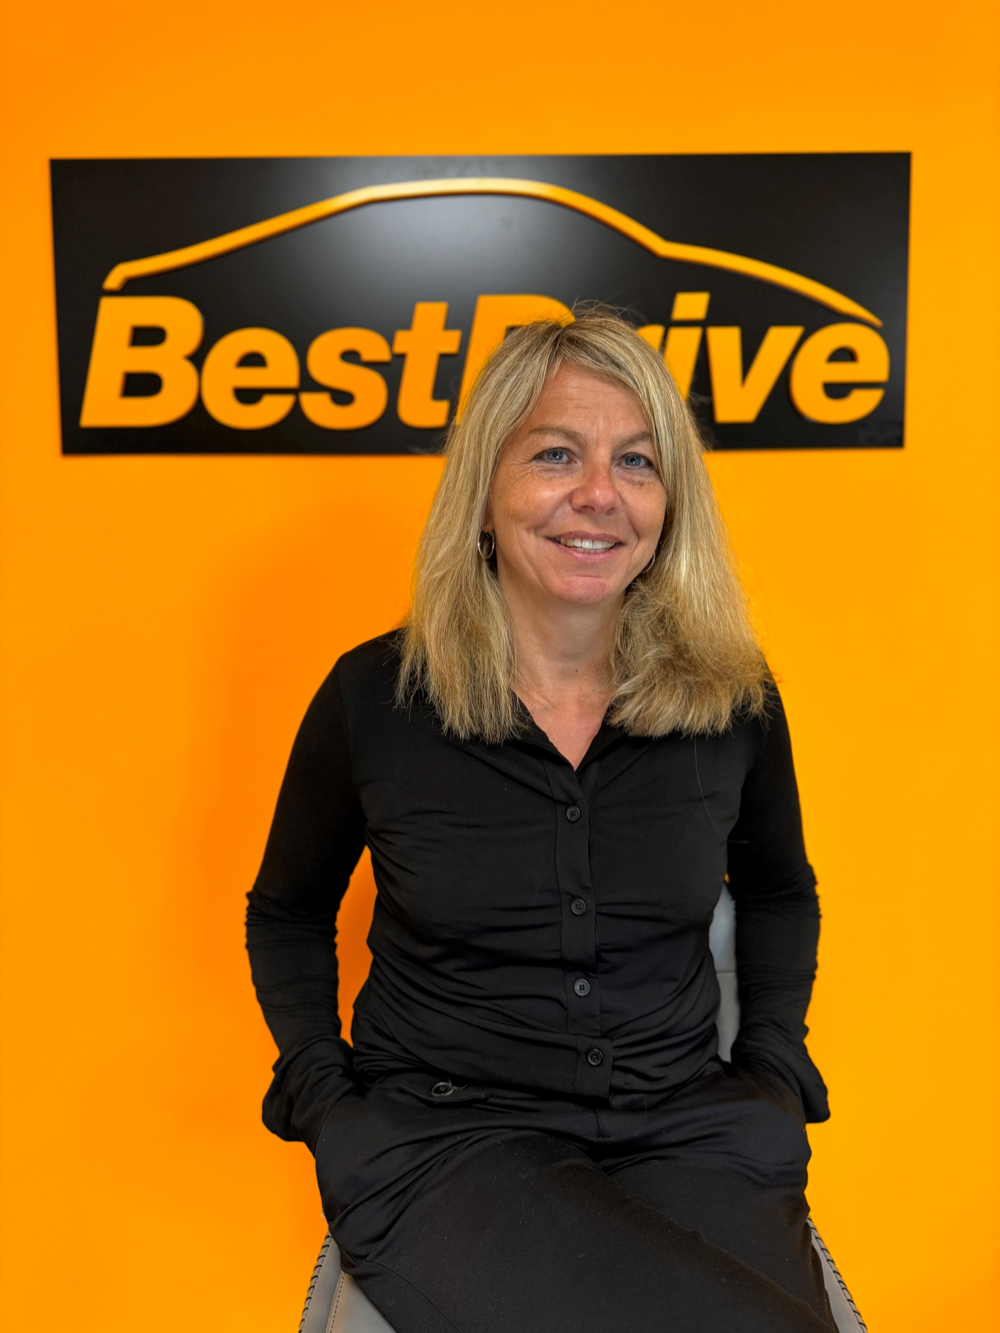 BestDrive France - Nomination de Caroline Michel au poste de responsable national des ventes Fleet Partner